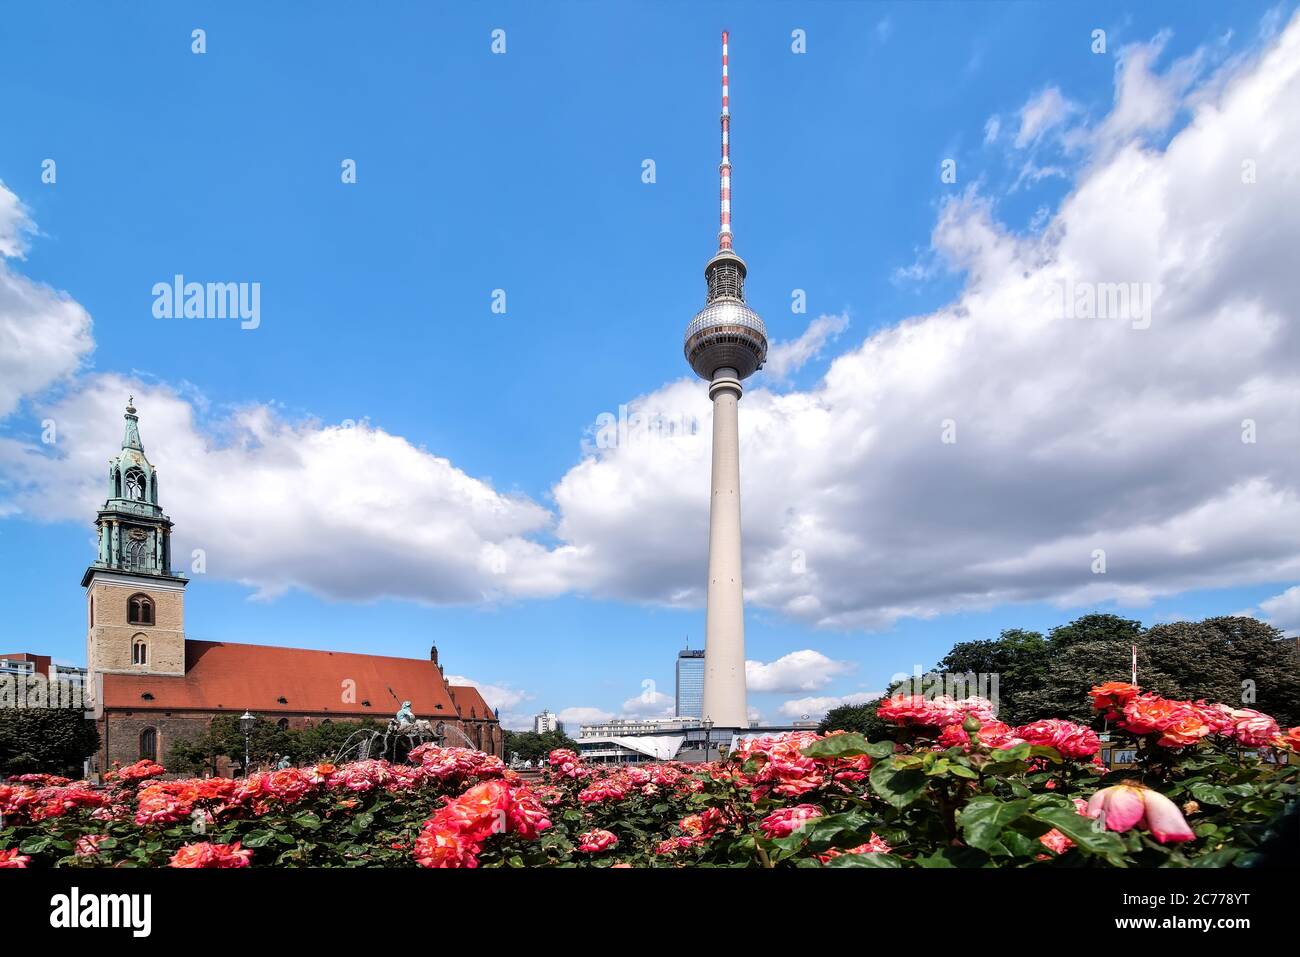 Berlin, Allemagne, 06/14/2020: Vue sur la tour de télévision, la Marienkirche et la fontaine Neptune à Berlin Mitte, Allemagne Banque D'Images